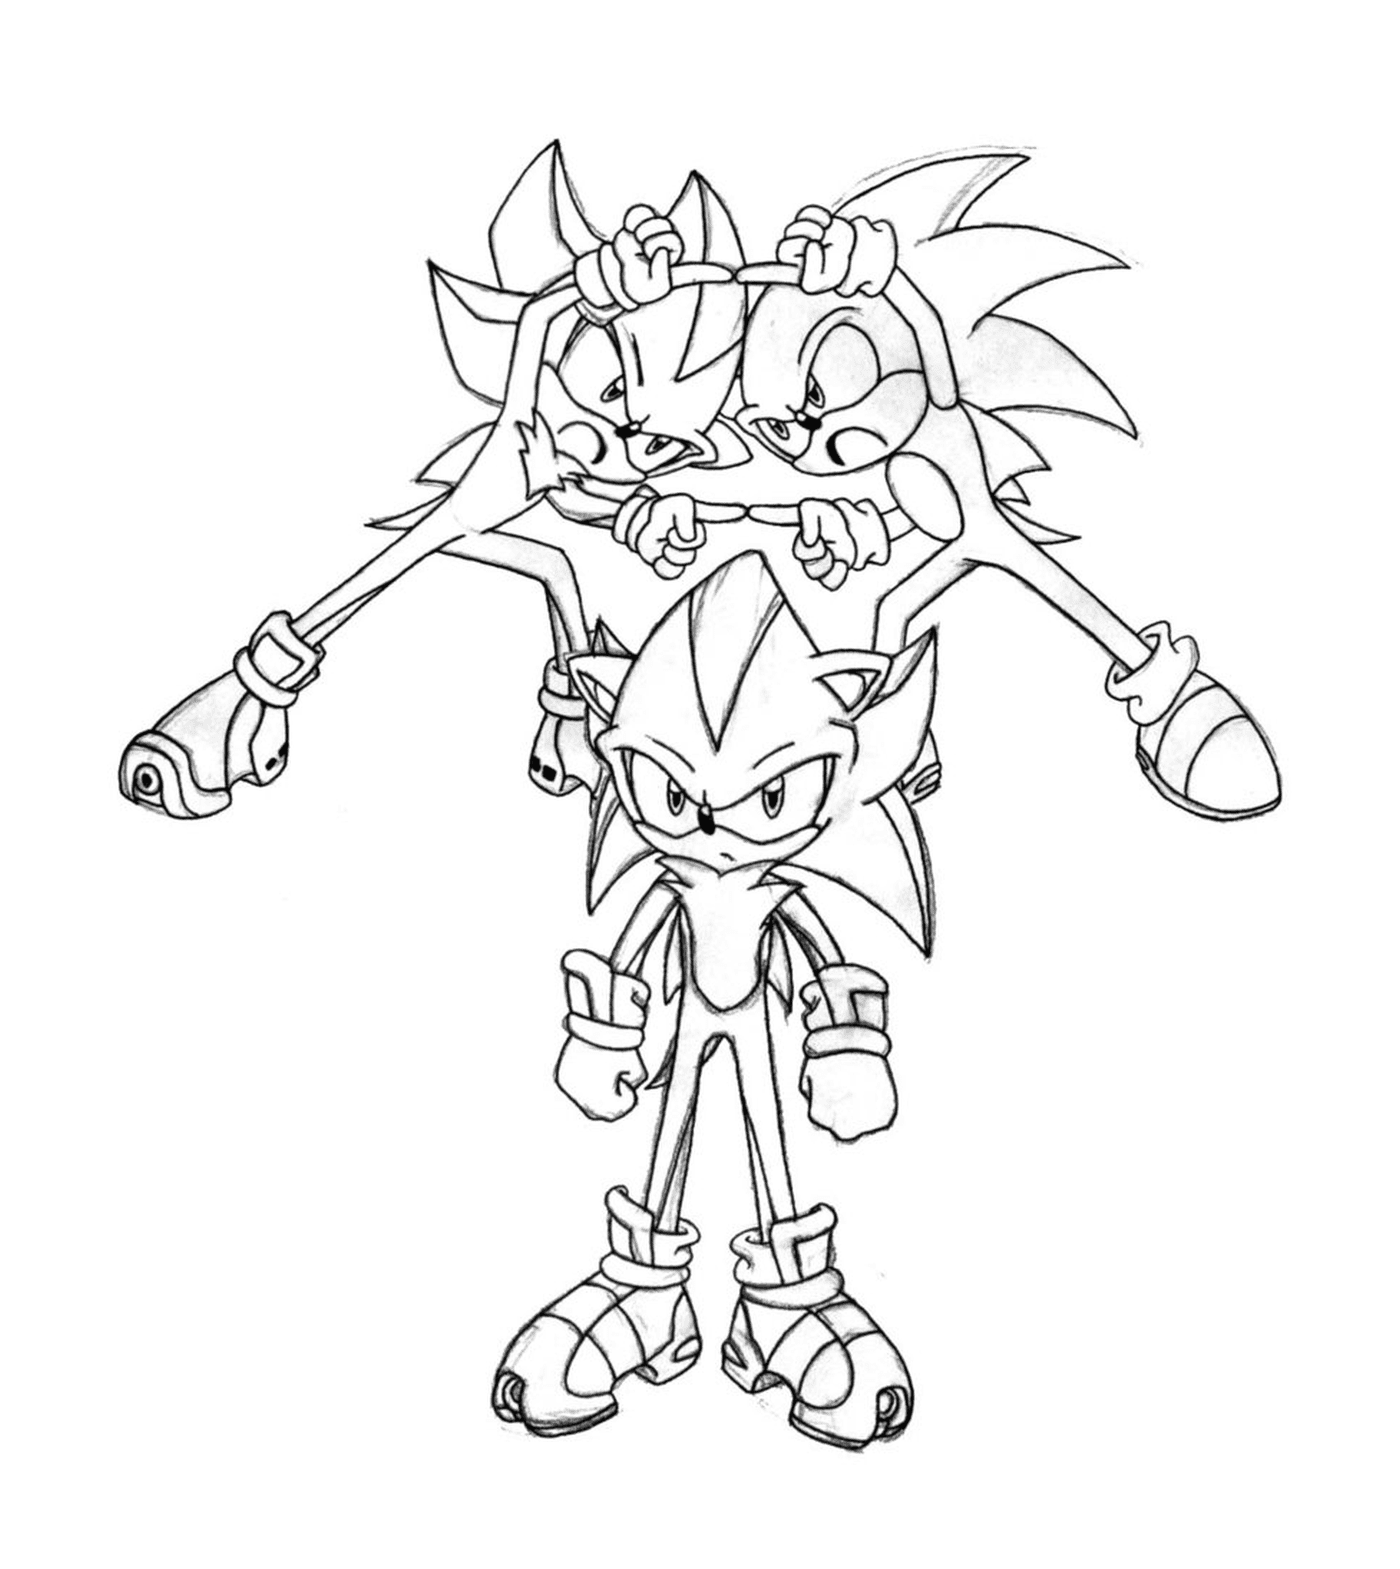  Sonic full of energy 